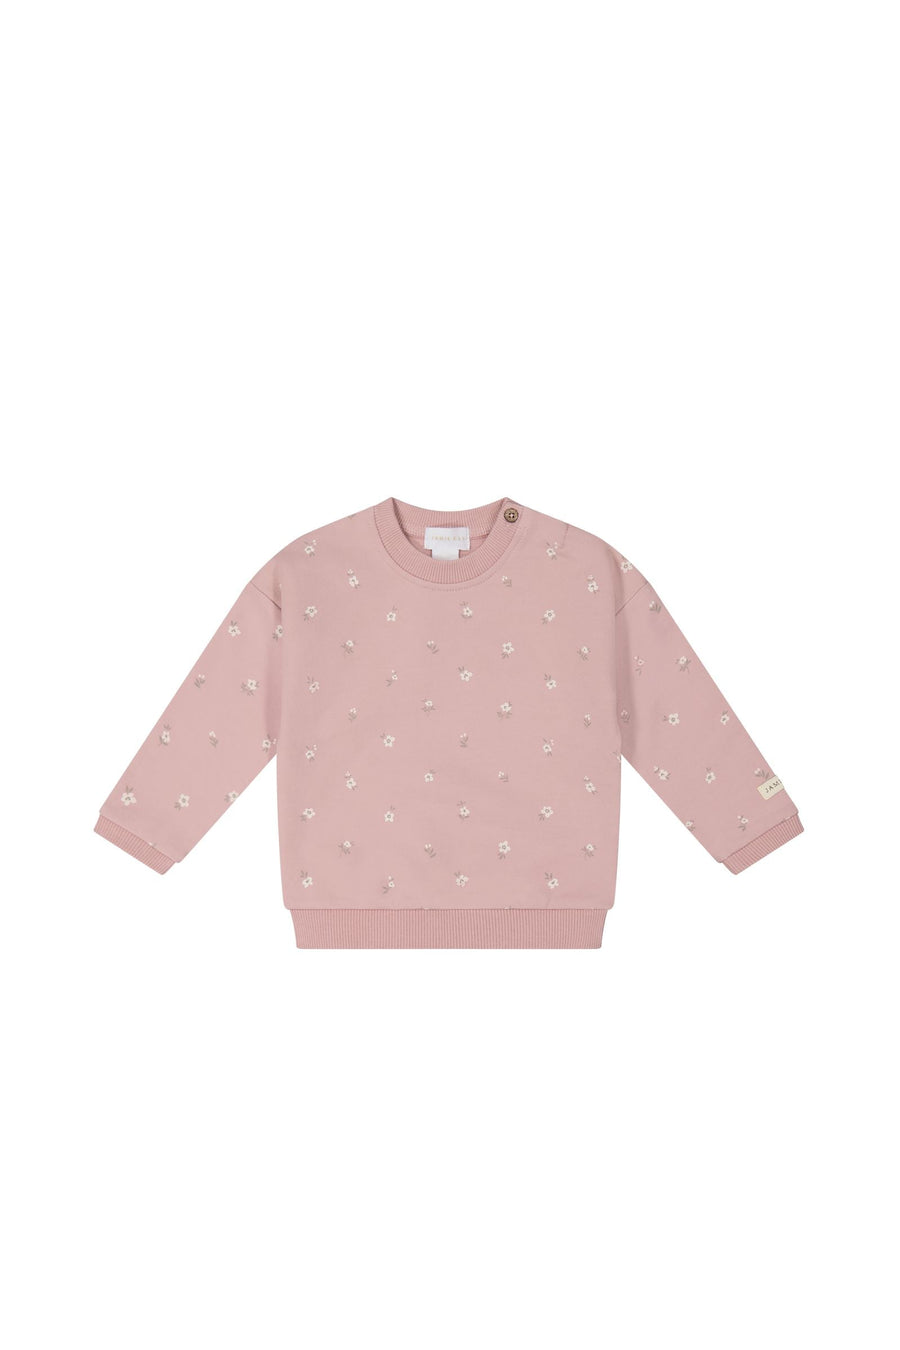 Organic Cotton Damien Sweatshirt - Goldie Rose Dust